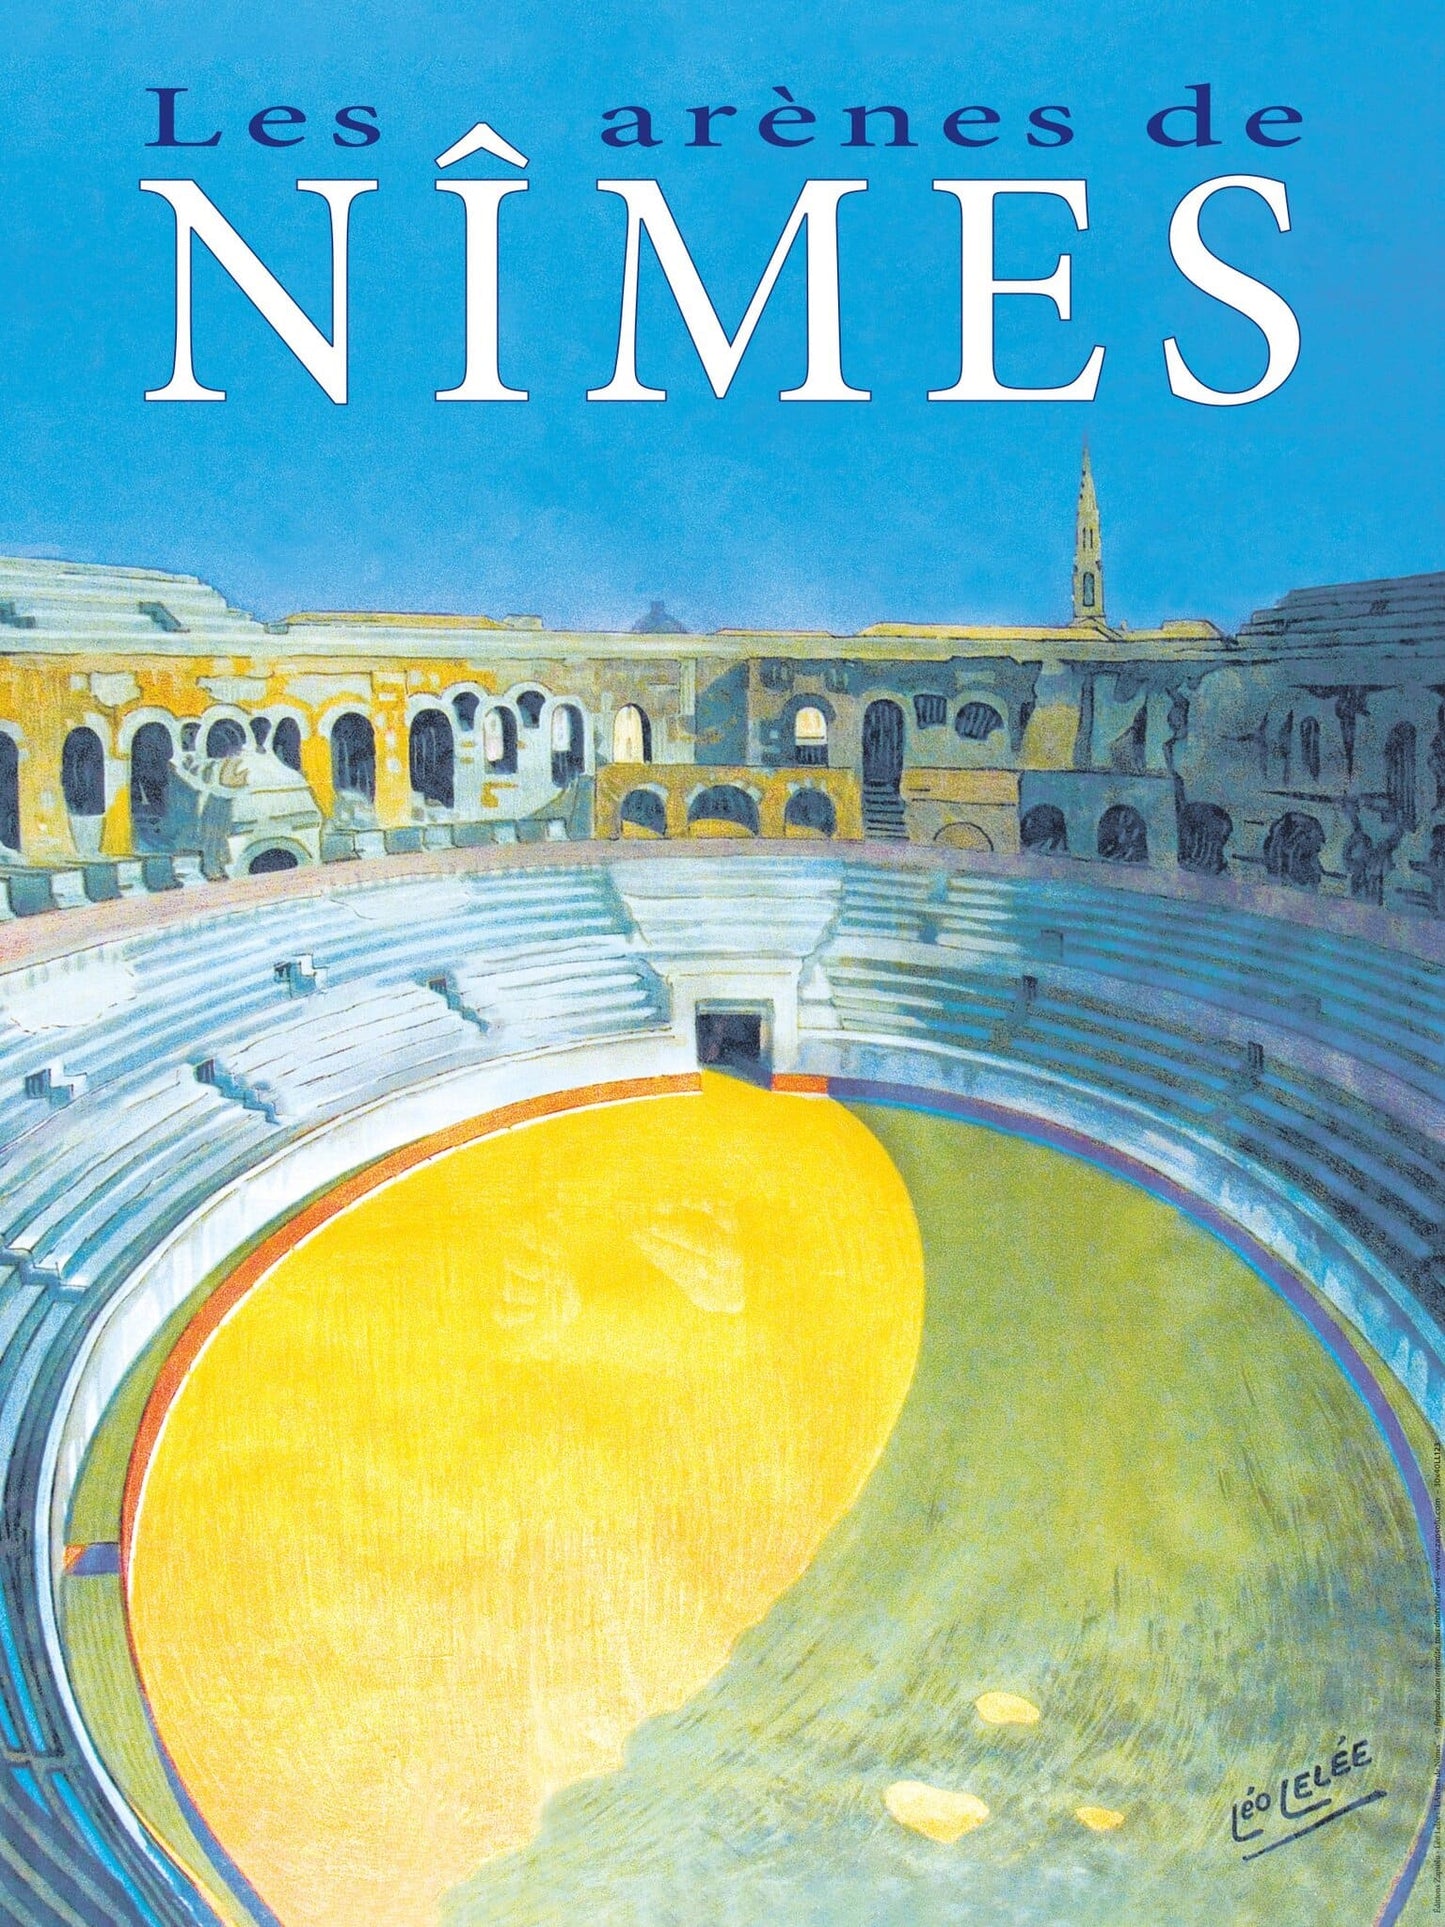 Reproduction d'Art : "Les arènes de Nîmes"